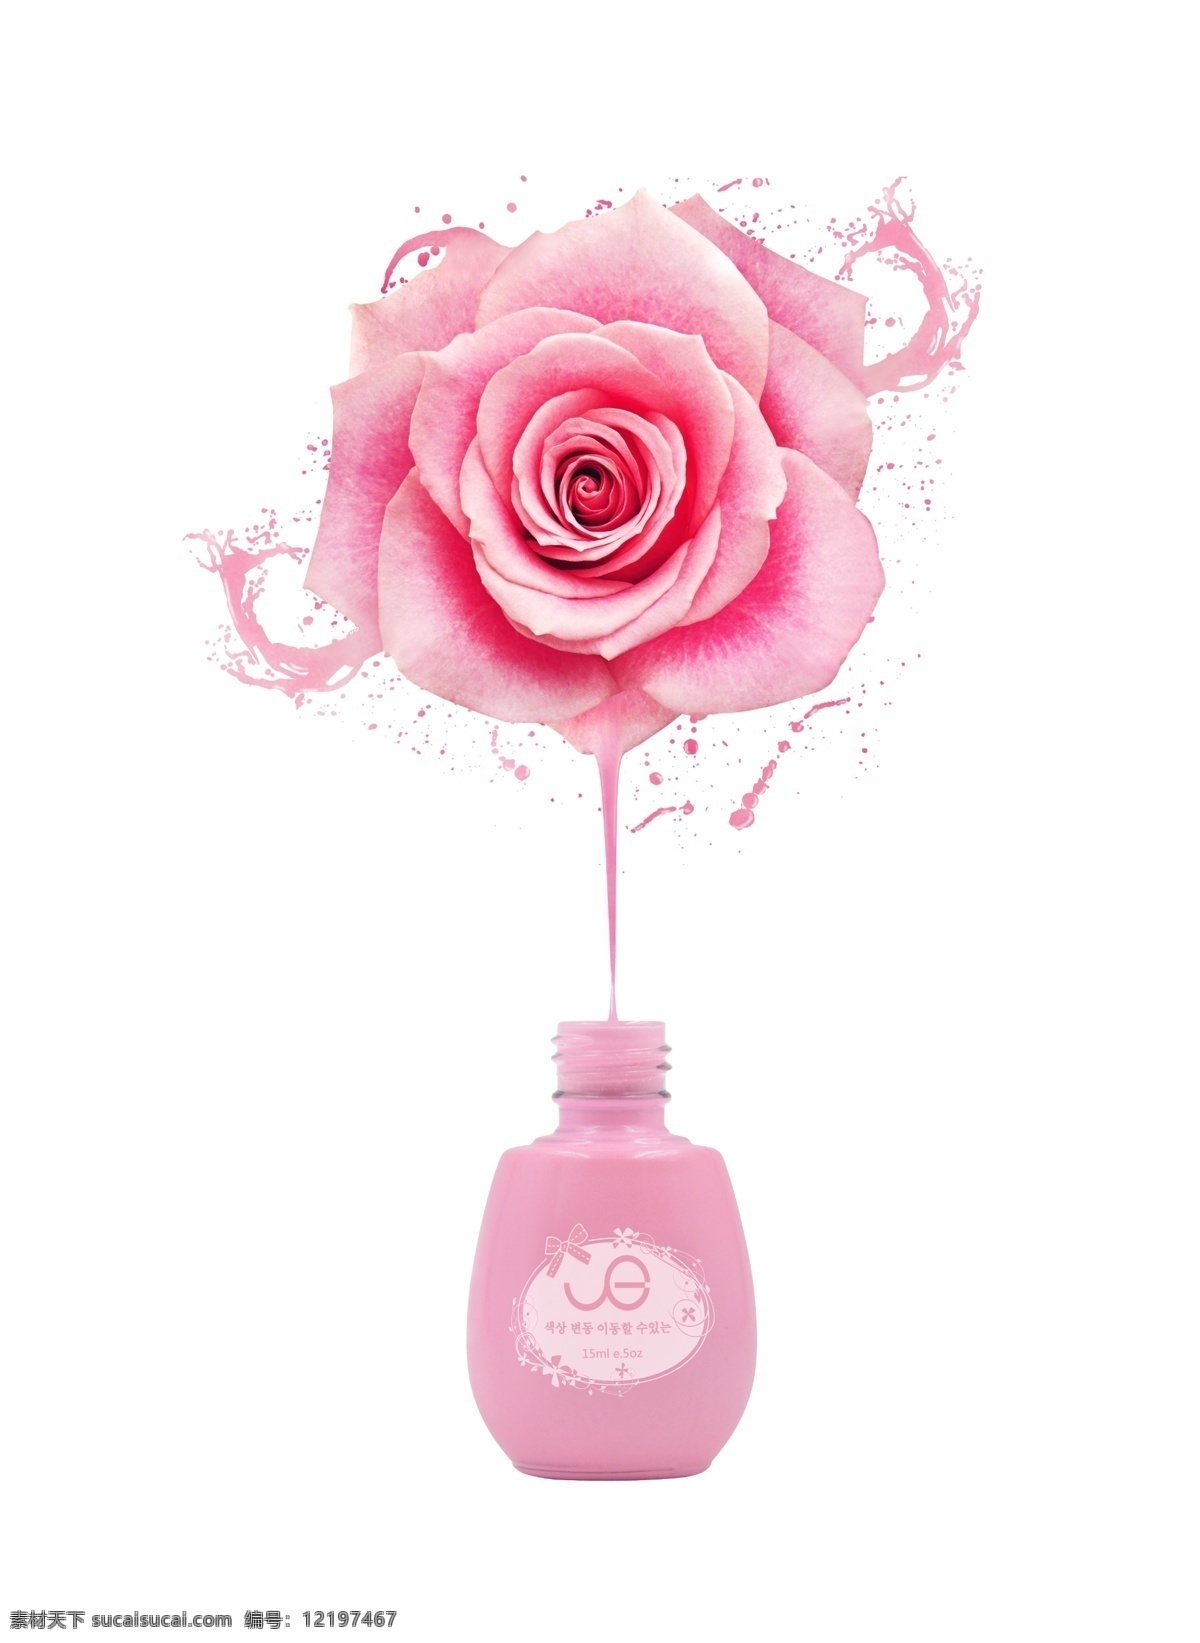 指甲油 海报 粉色 玫瑰 模版下载 粉色玫瑰 花朵 美甲 油漆 创意海报 创意指甲油 好报设计 源文件 玫瑰花 白色